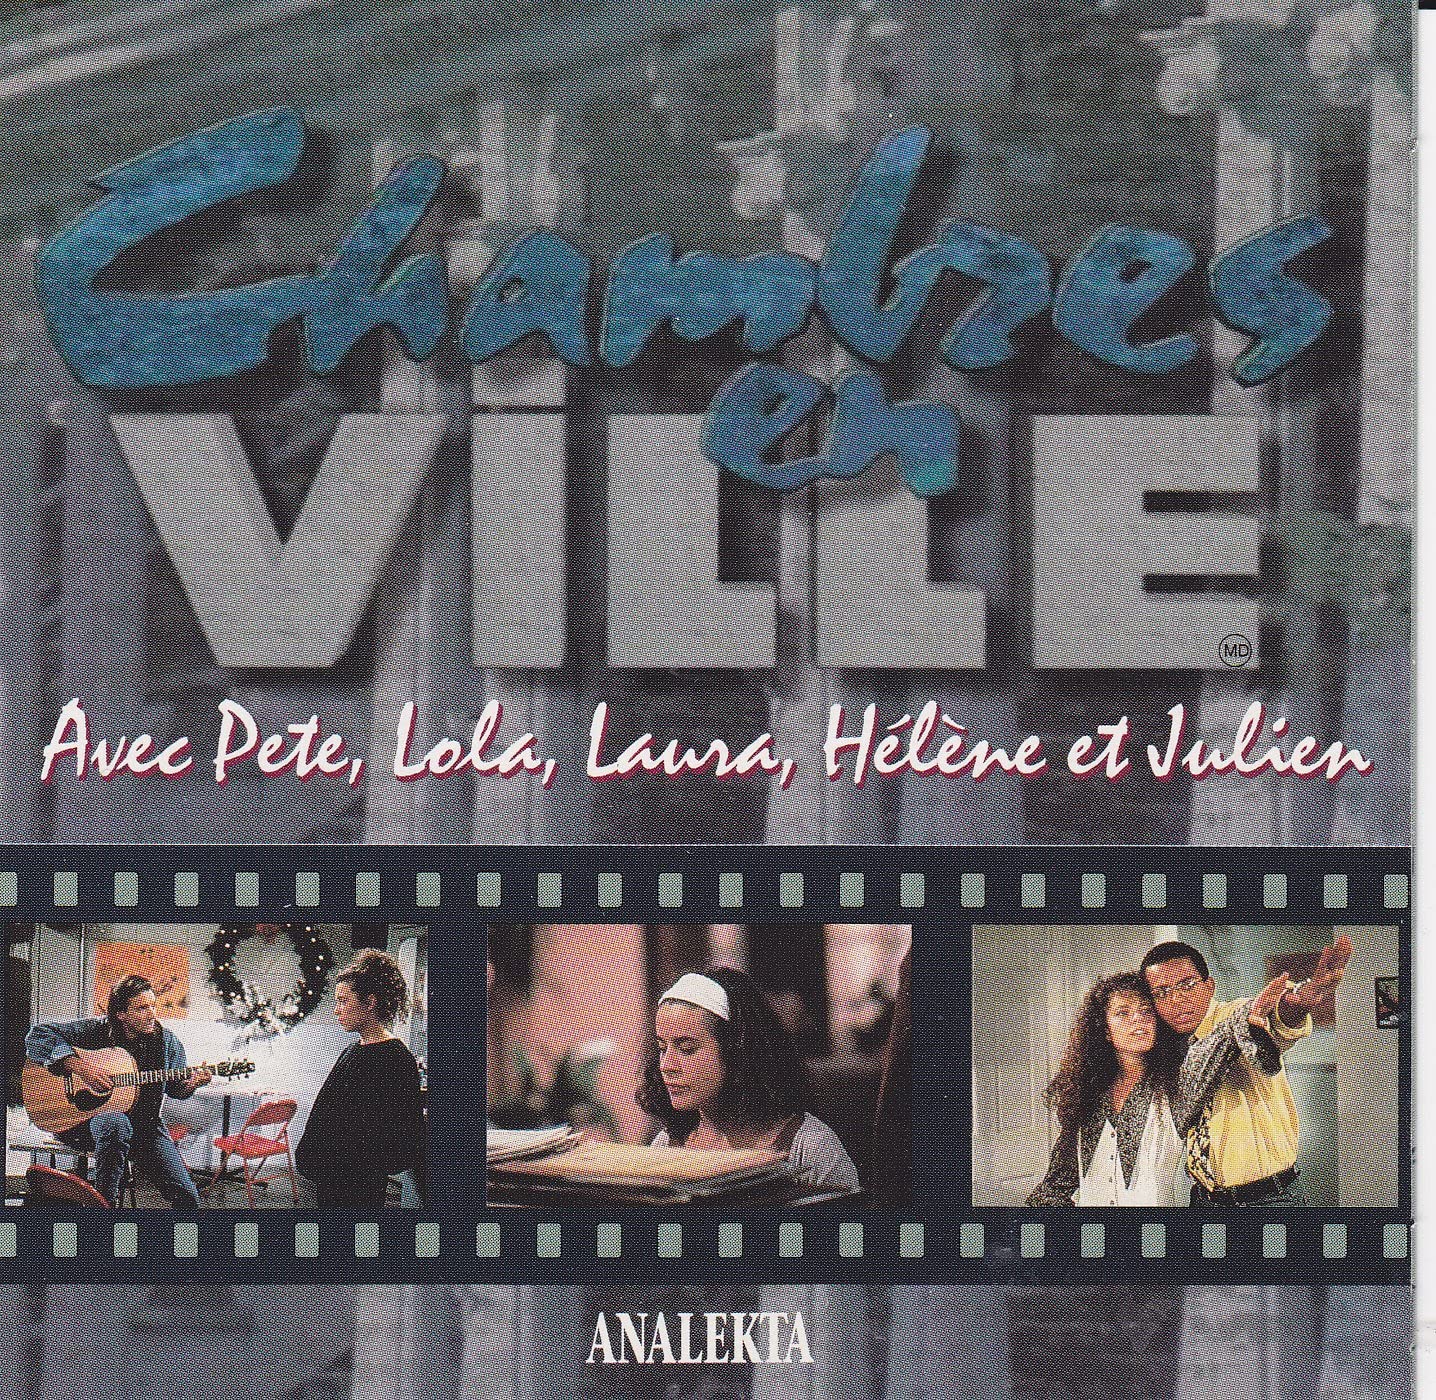 Chambres en ville [Audio CD] Avec Pete/ Lola Laura/ Hélène et Julien